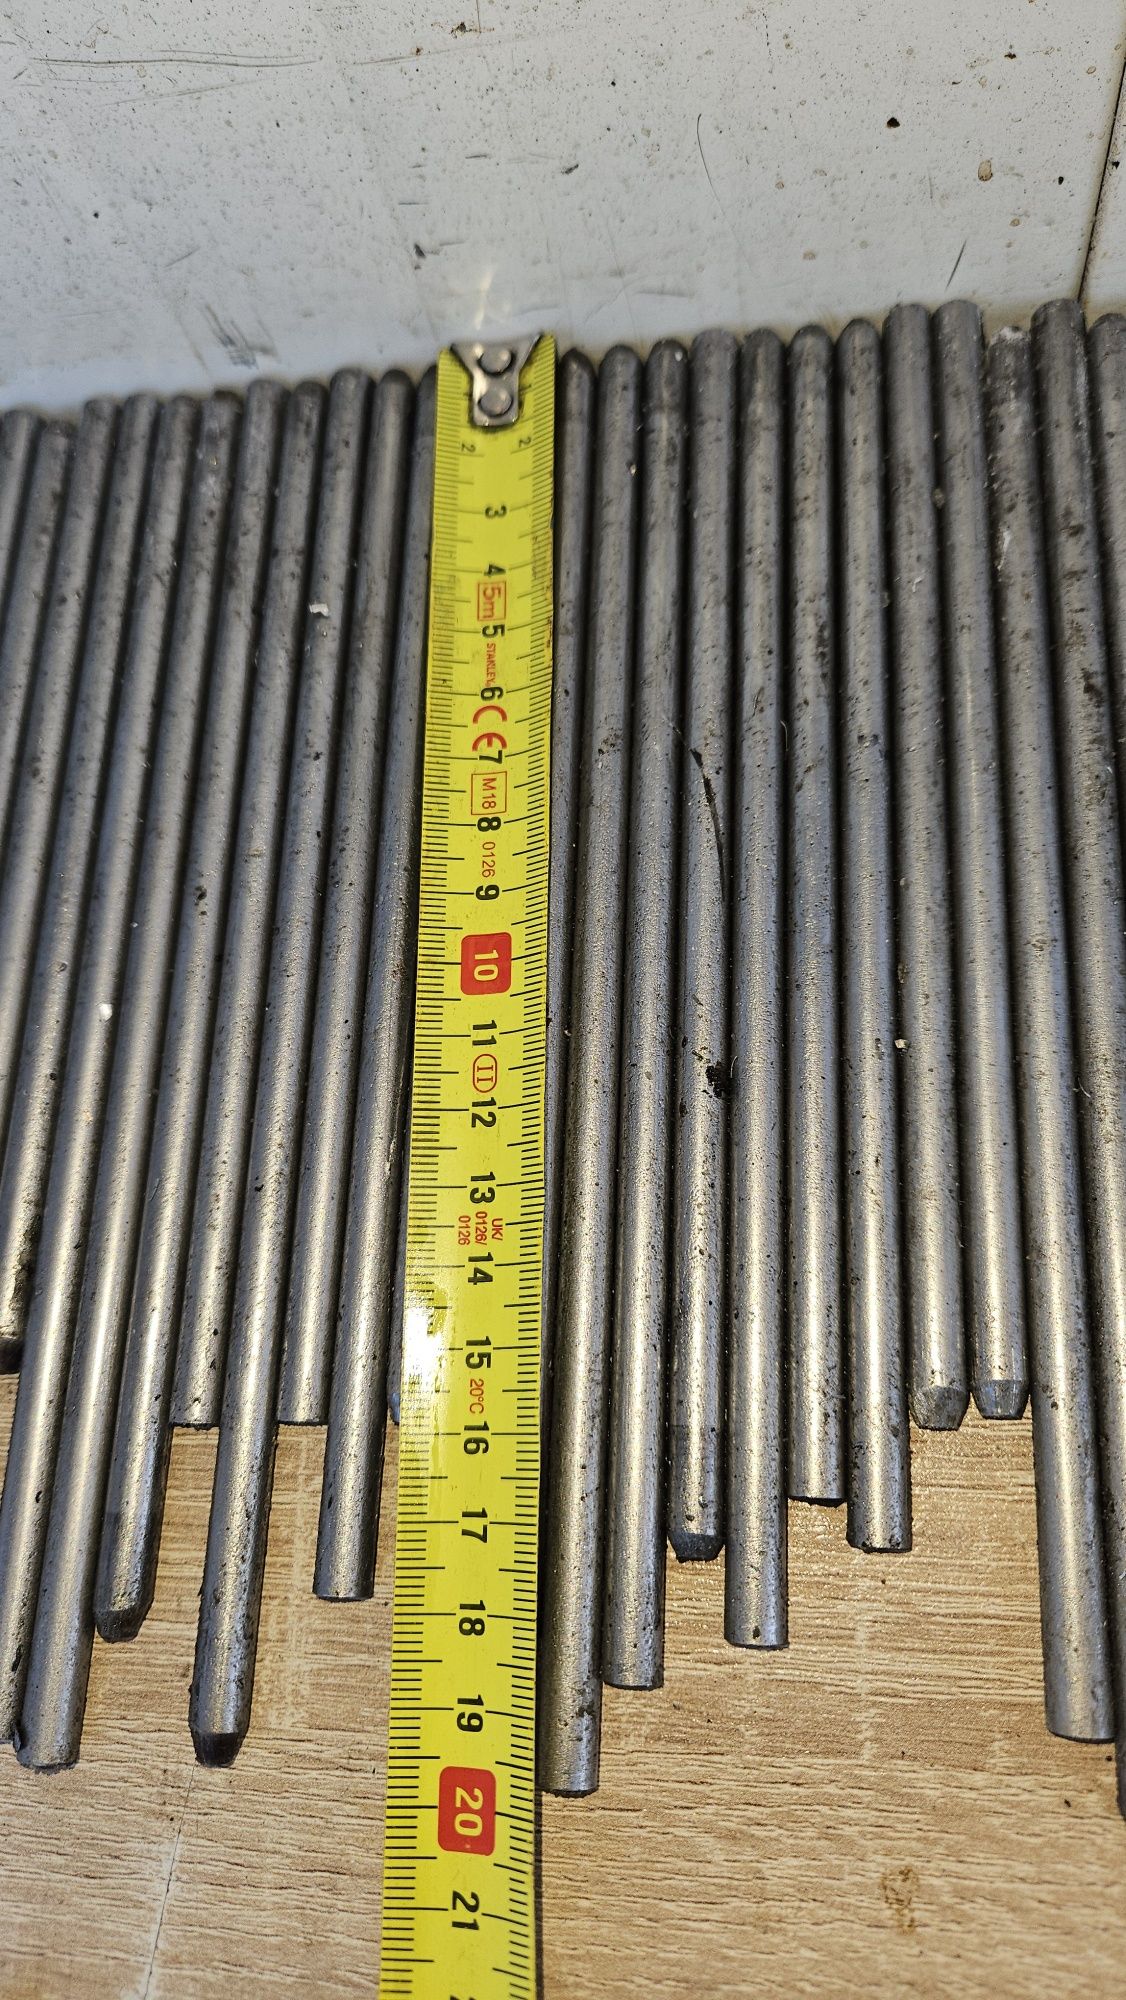 Bară inox 7 mm diam (solid bar ionx 7 mm)